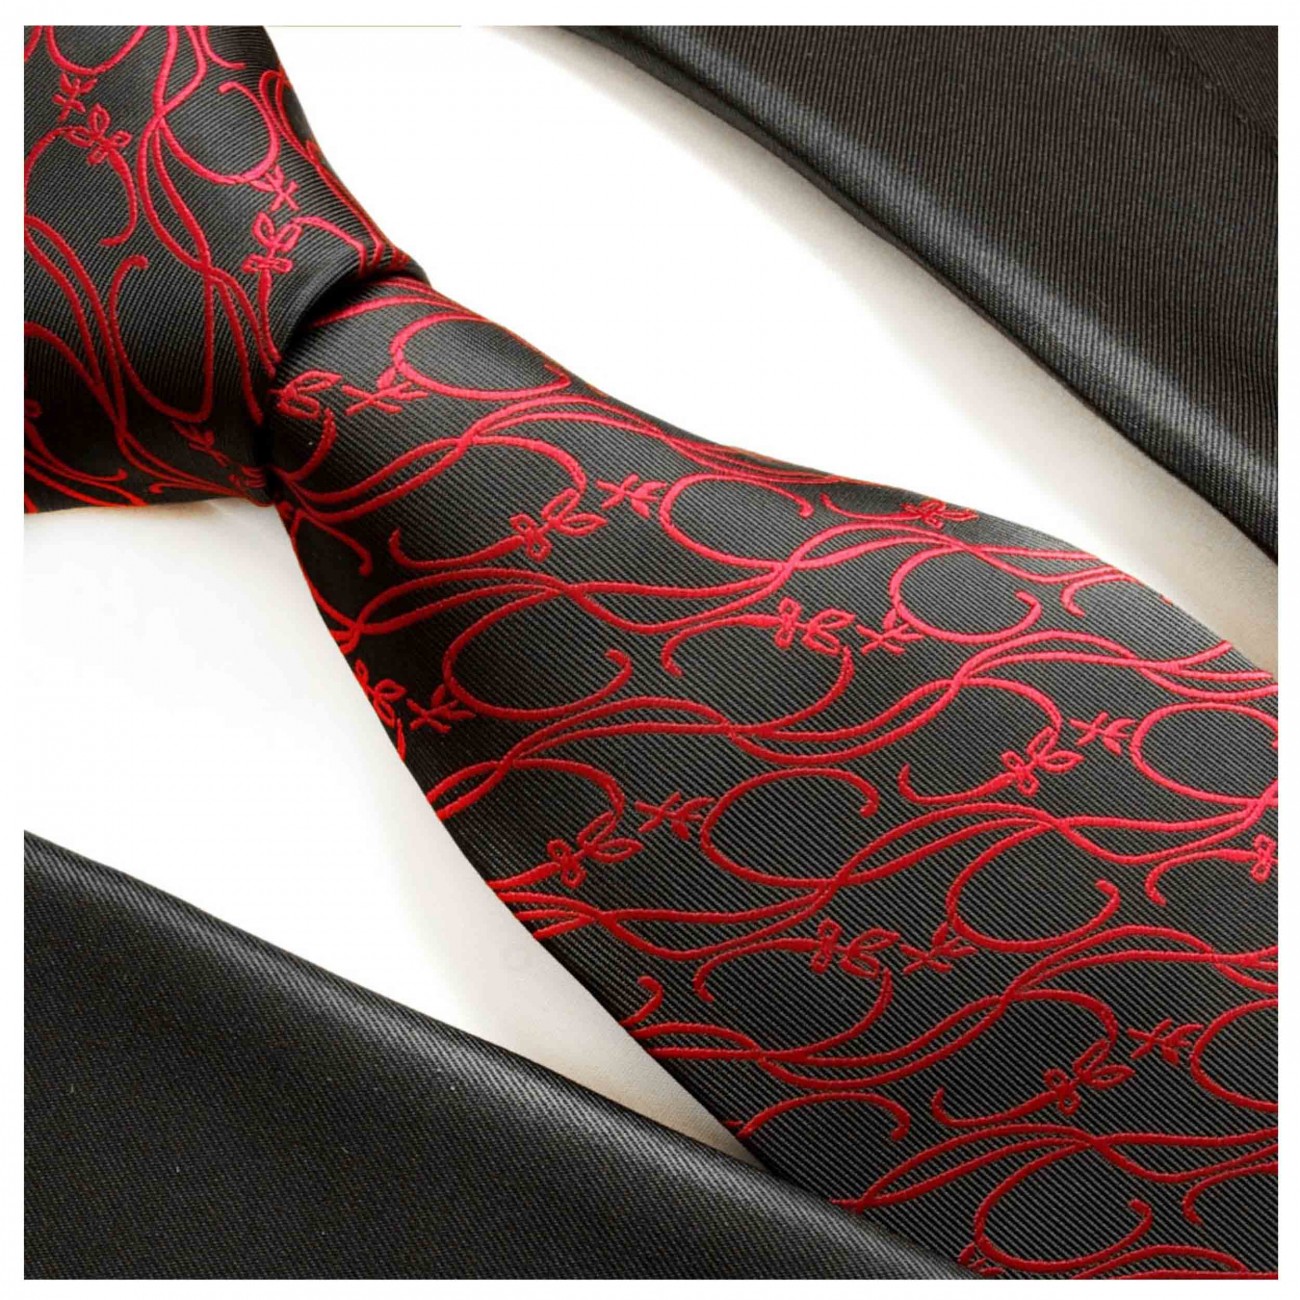 Herren Krawatte rot schwarz gepunket